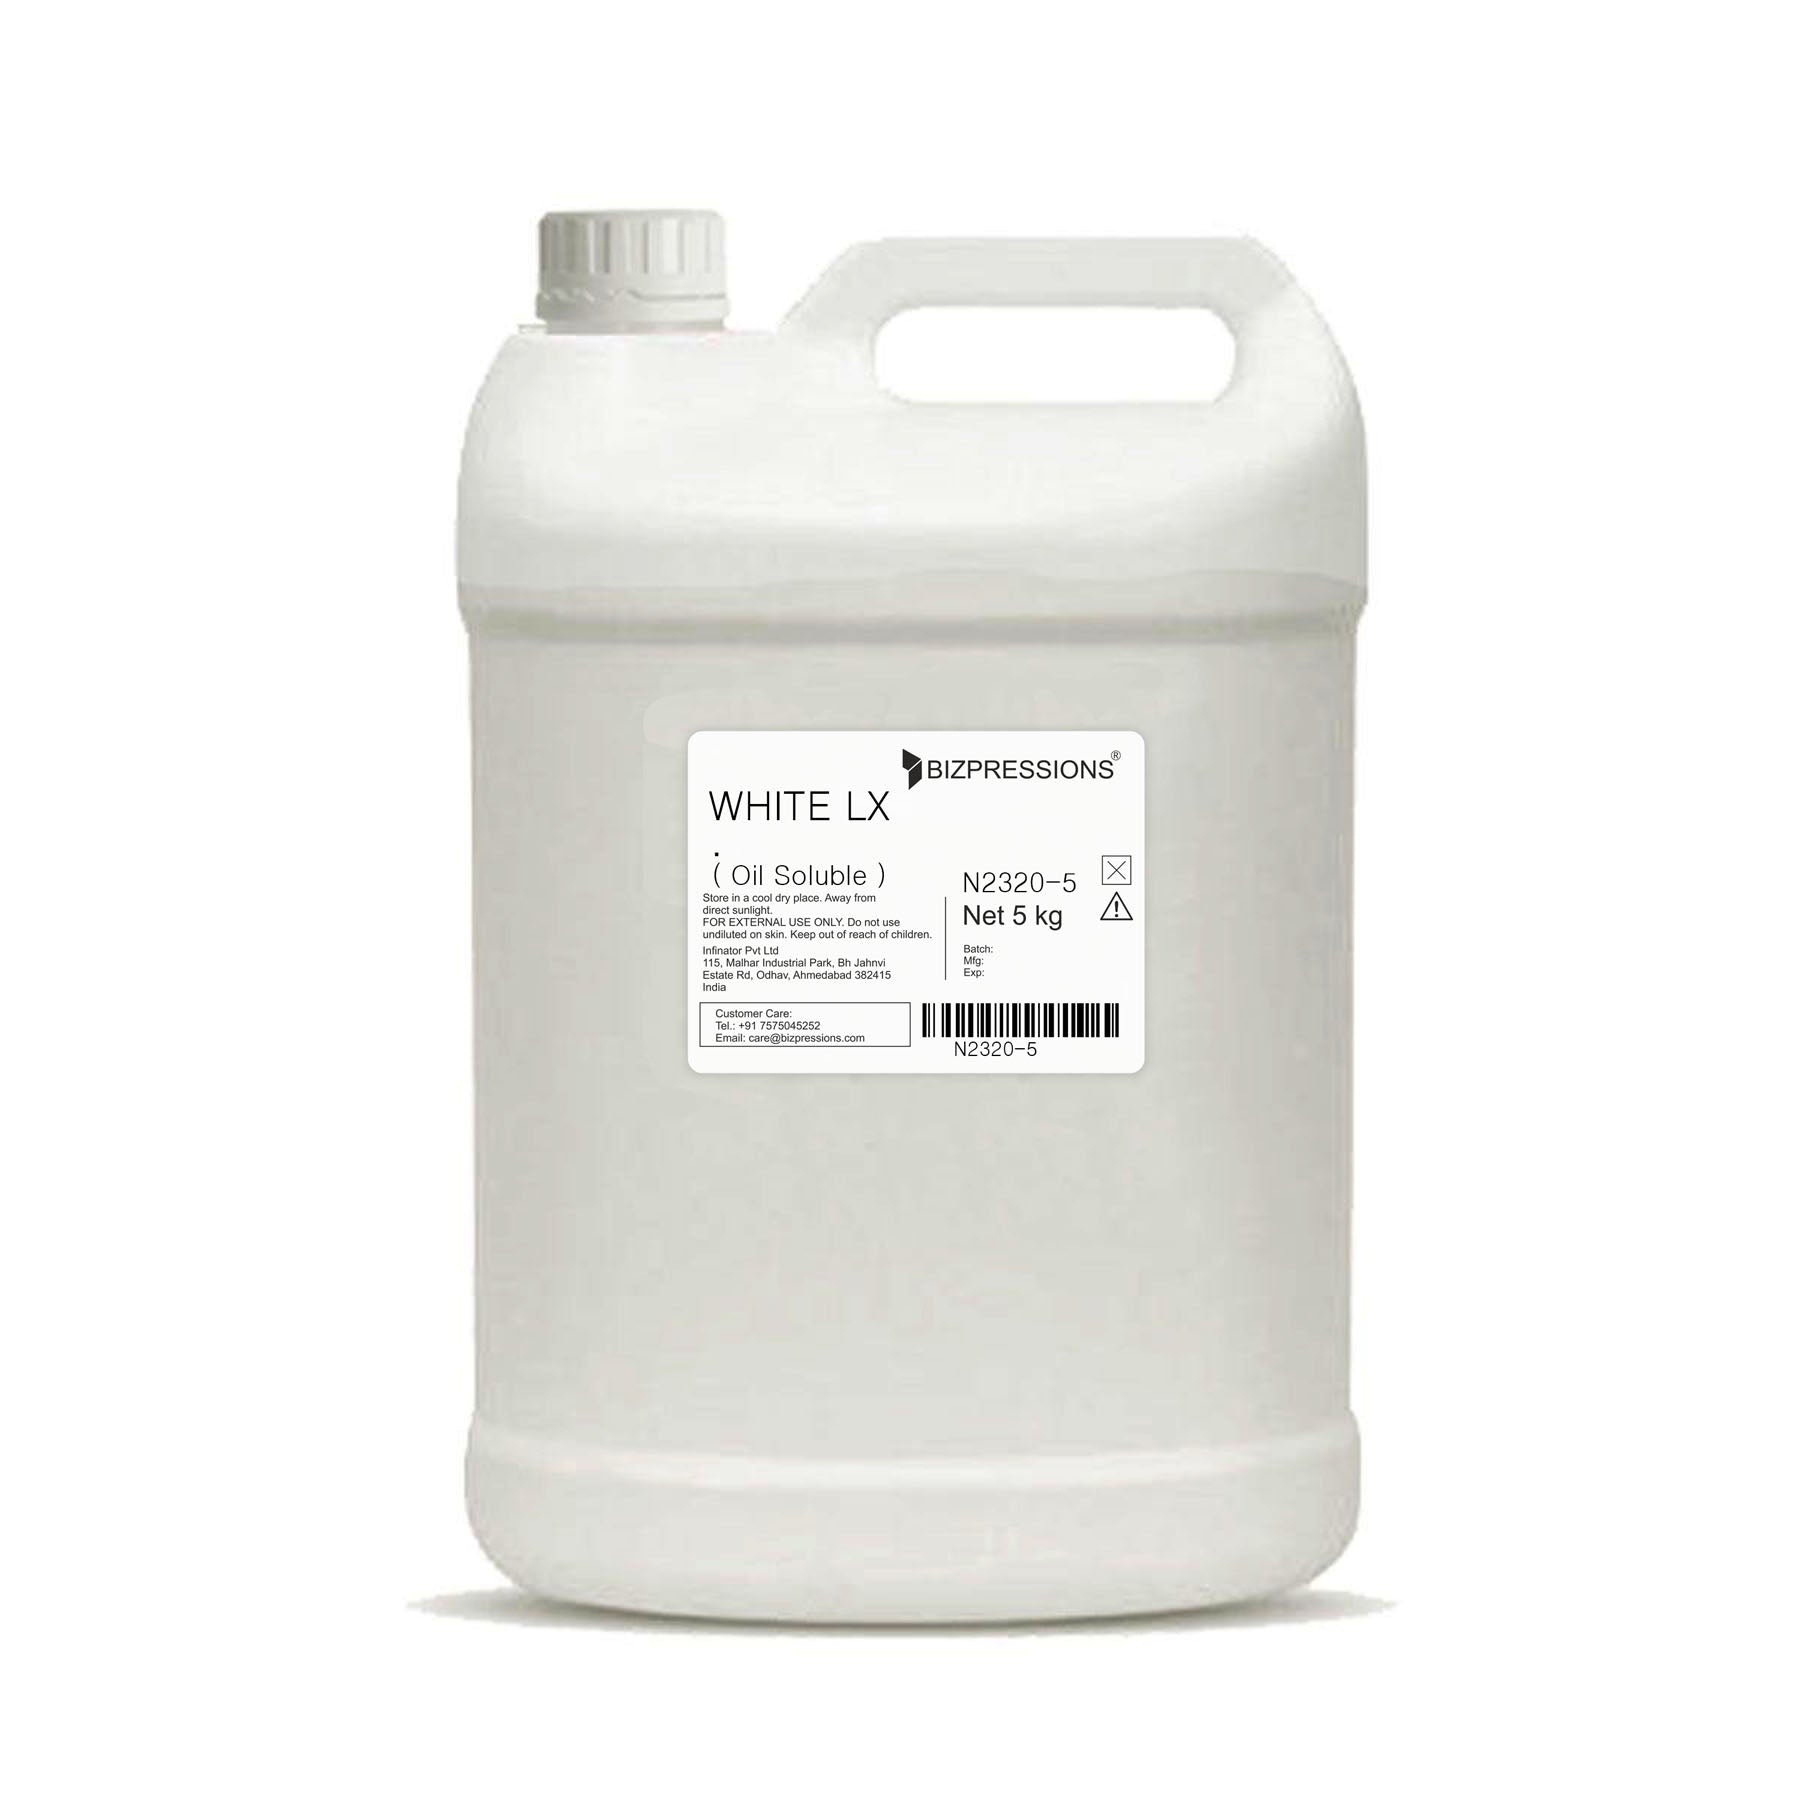 WHITE LX - Fragrance ( Oil Soluble ) - 5 kg